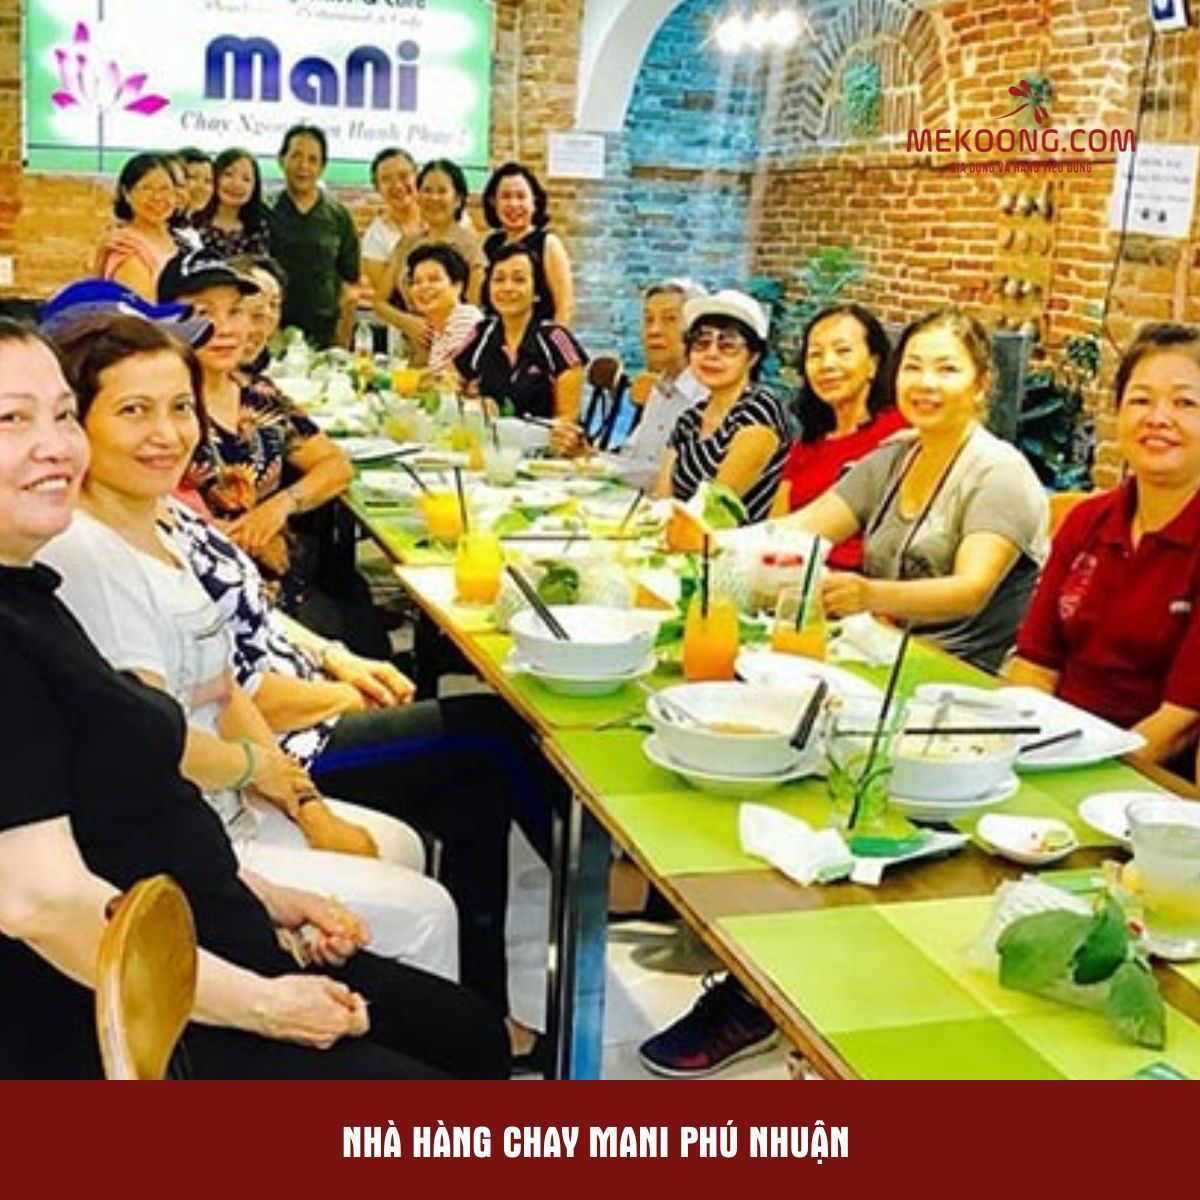 Nhà hàng chay Mani Phú Nhuận